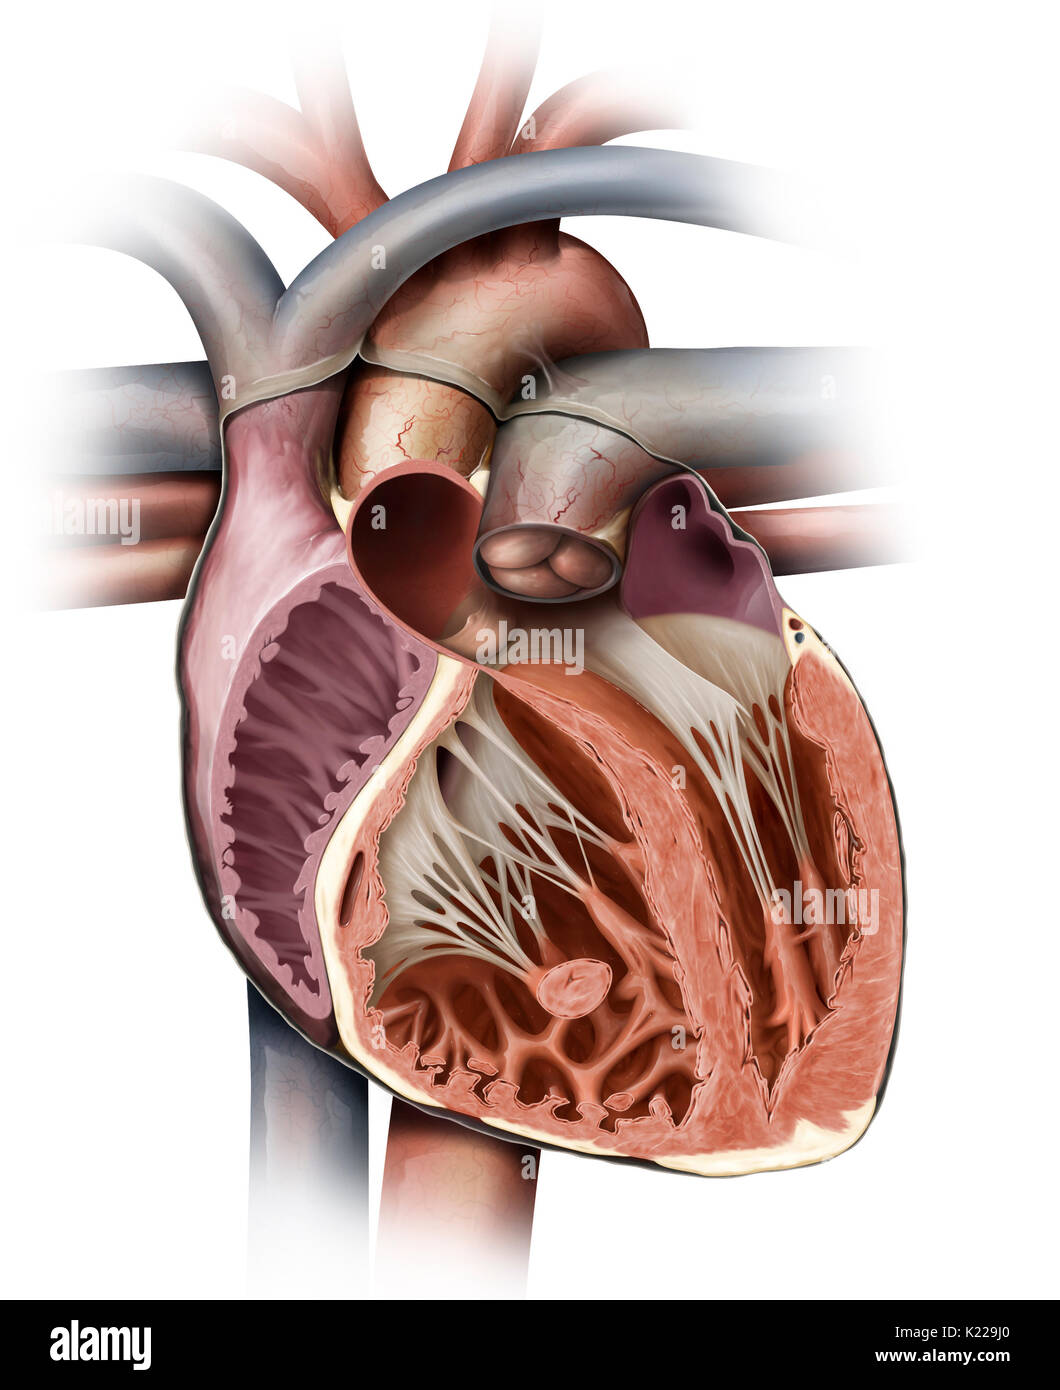 Das Herz ist ein muskulöses Organ aus vier Kammern; seine regelmäßige rhythmische Kontraktionen Pumpe und zirkulieren im Blut. Stockfoto